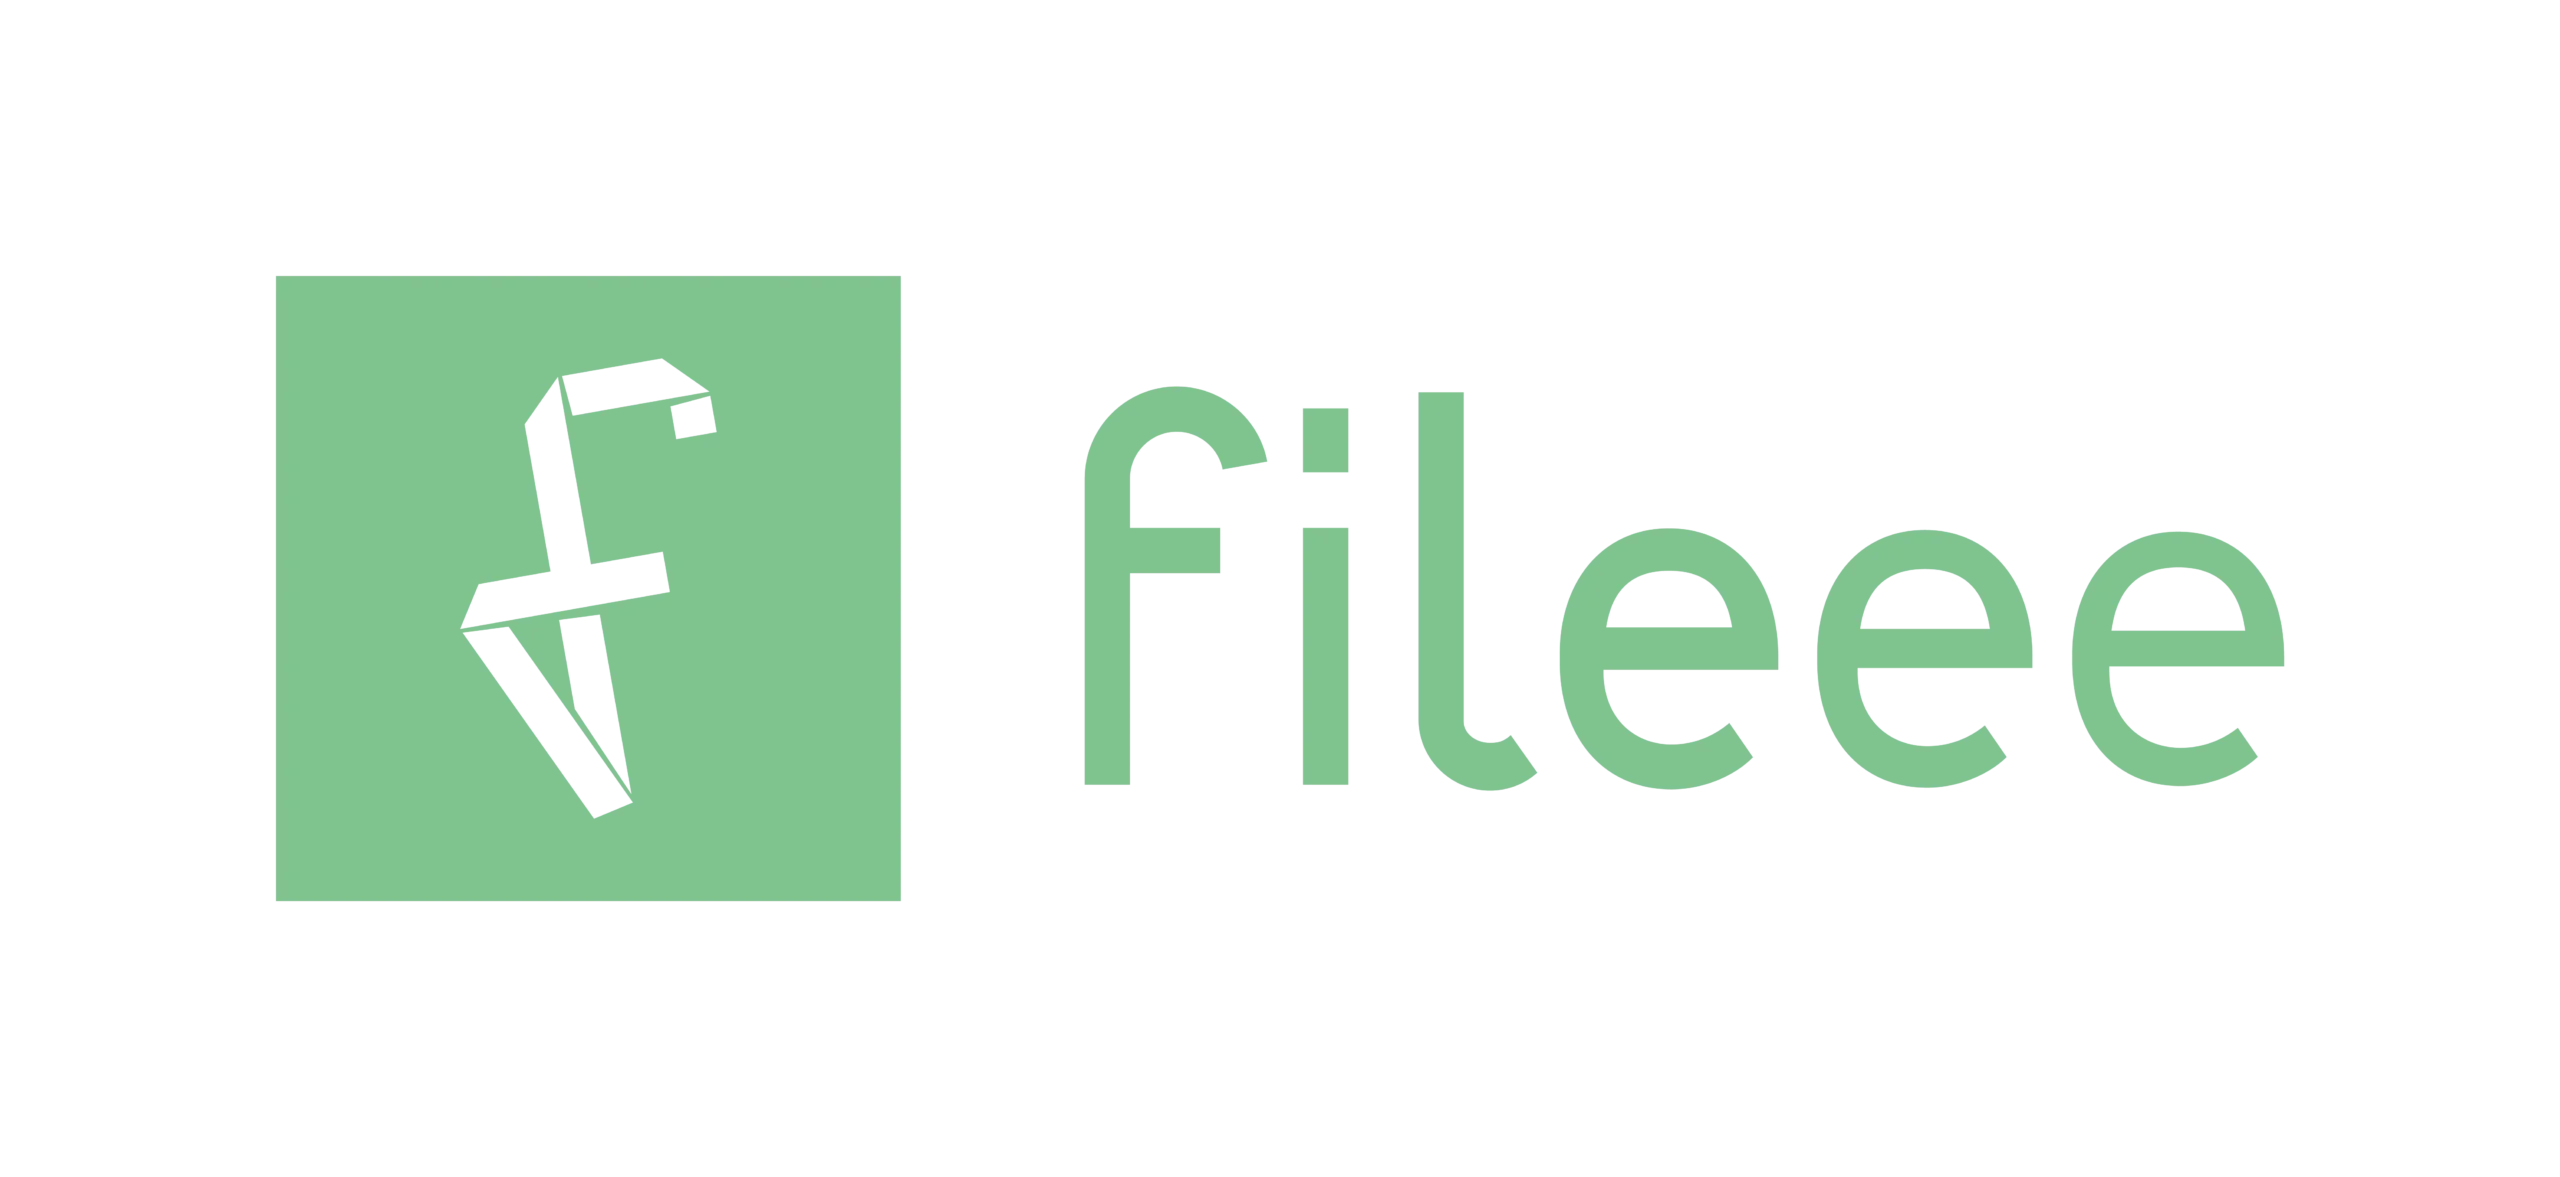 Logo Fileee